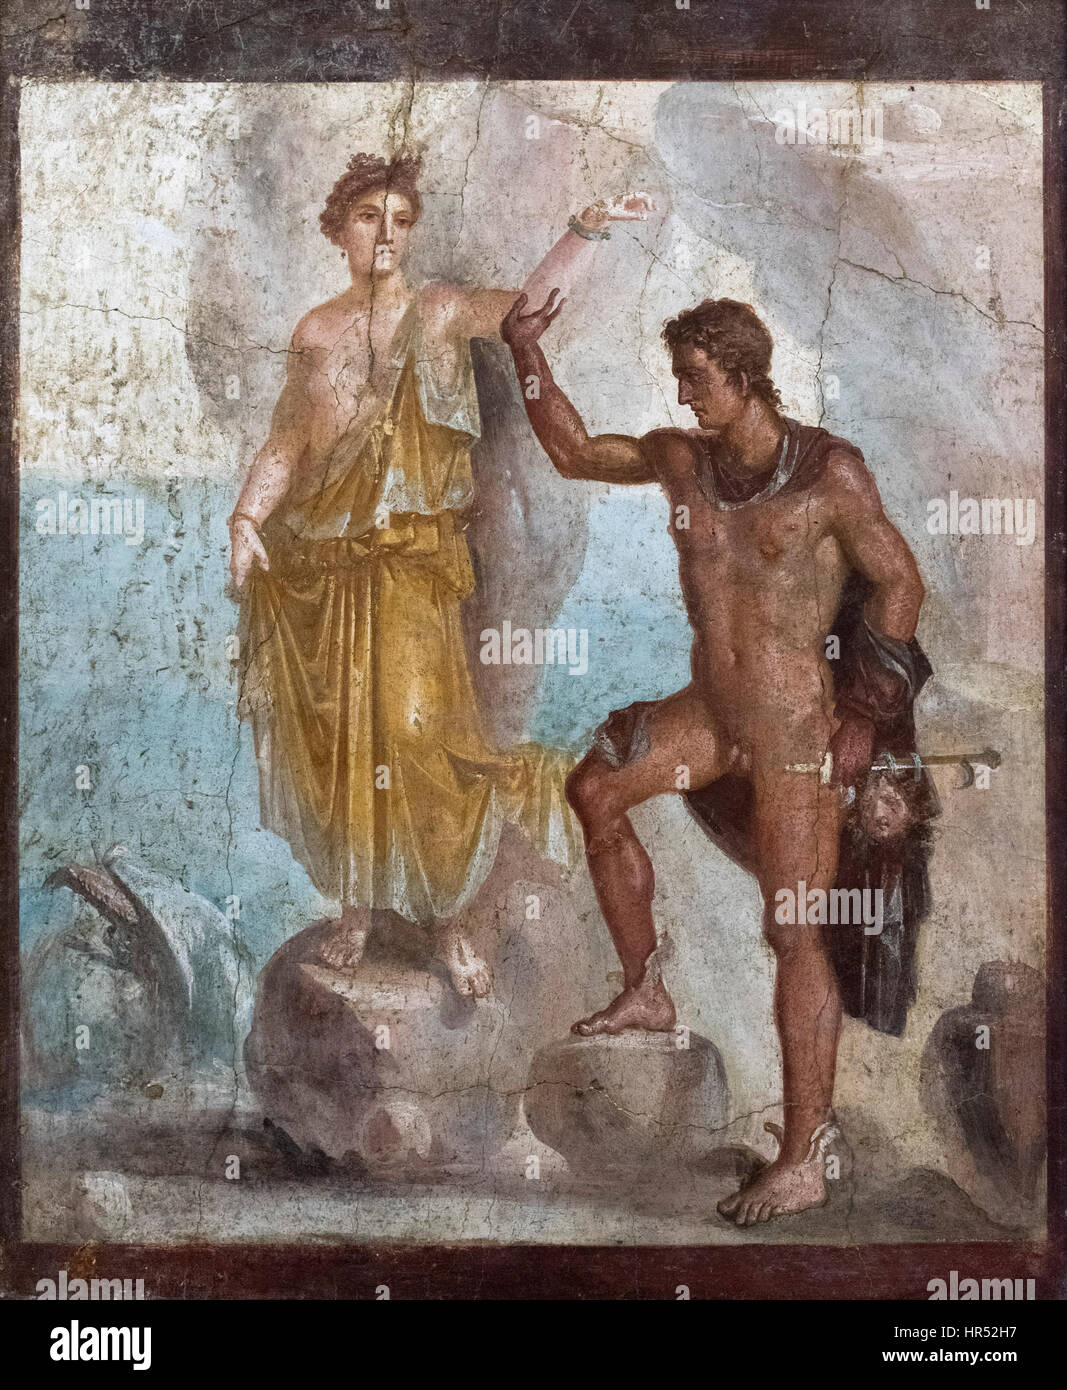 Napoli. L'Italia. Perseo e Andromeda, affresco 62-79 AD, dalla casa dei Dioscuri a Pompei, Museo Archeologico Nazionale di Napoli. Foto Stock